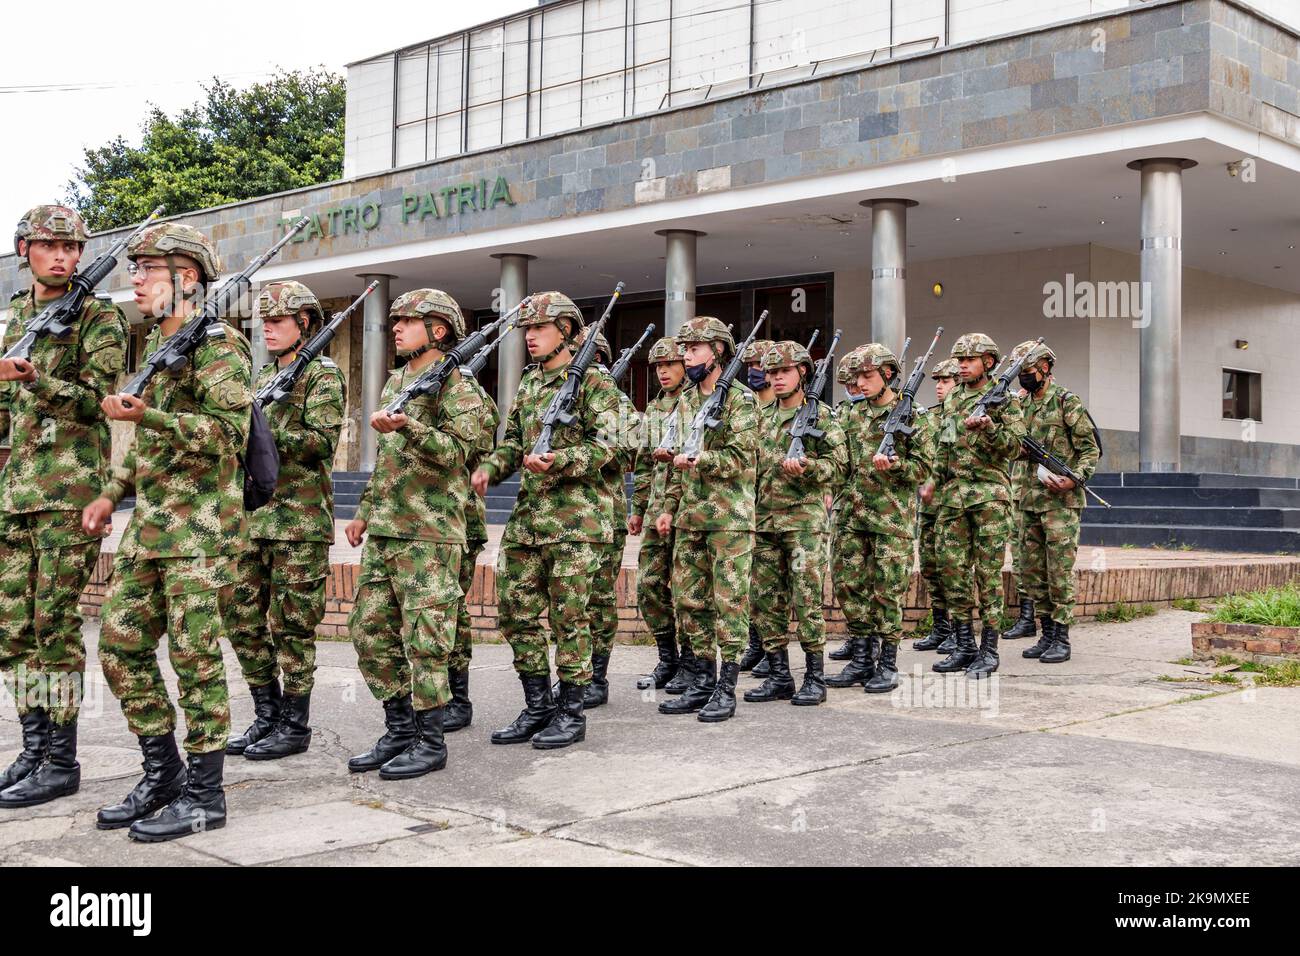 Bogota Colombia, Chapinero, soldati soldato uniforme uniforme formazione uniforme Canton Norte base militare Nazionale forze armate reclutare fucile in marcia Foto Stock